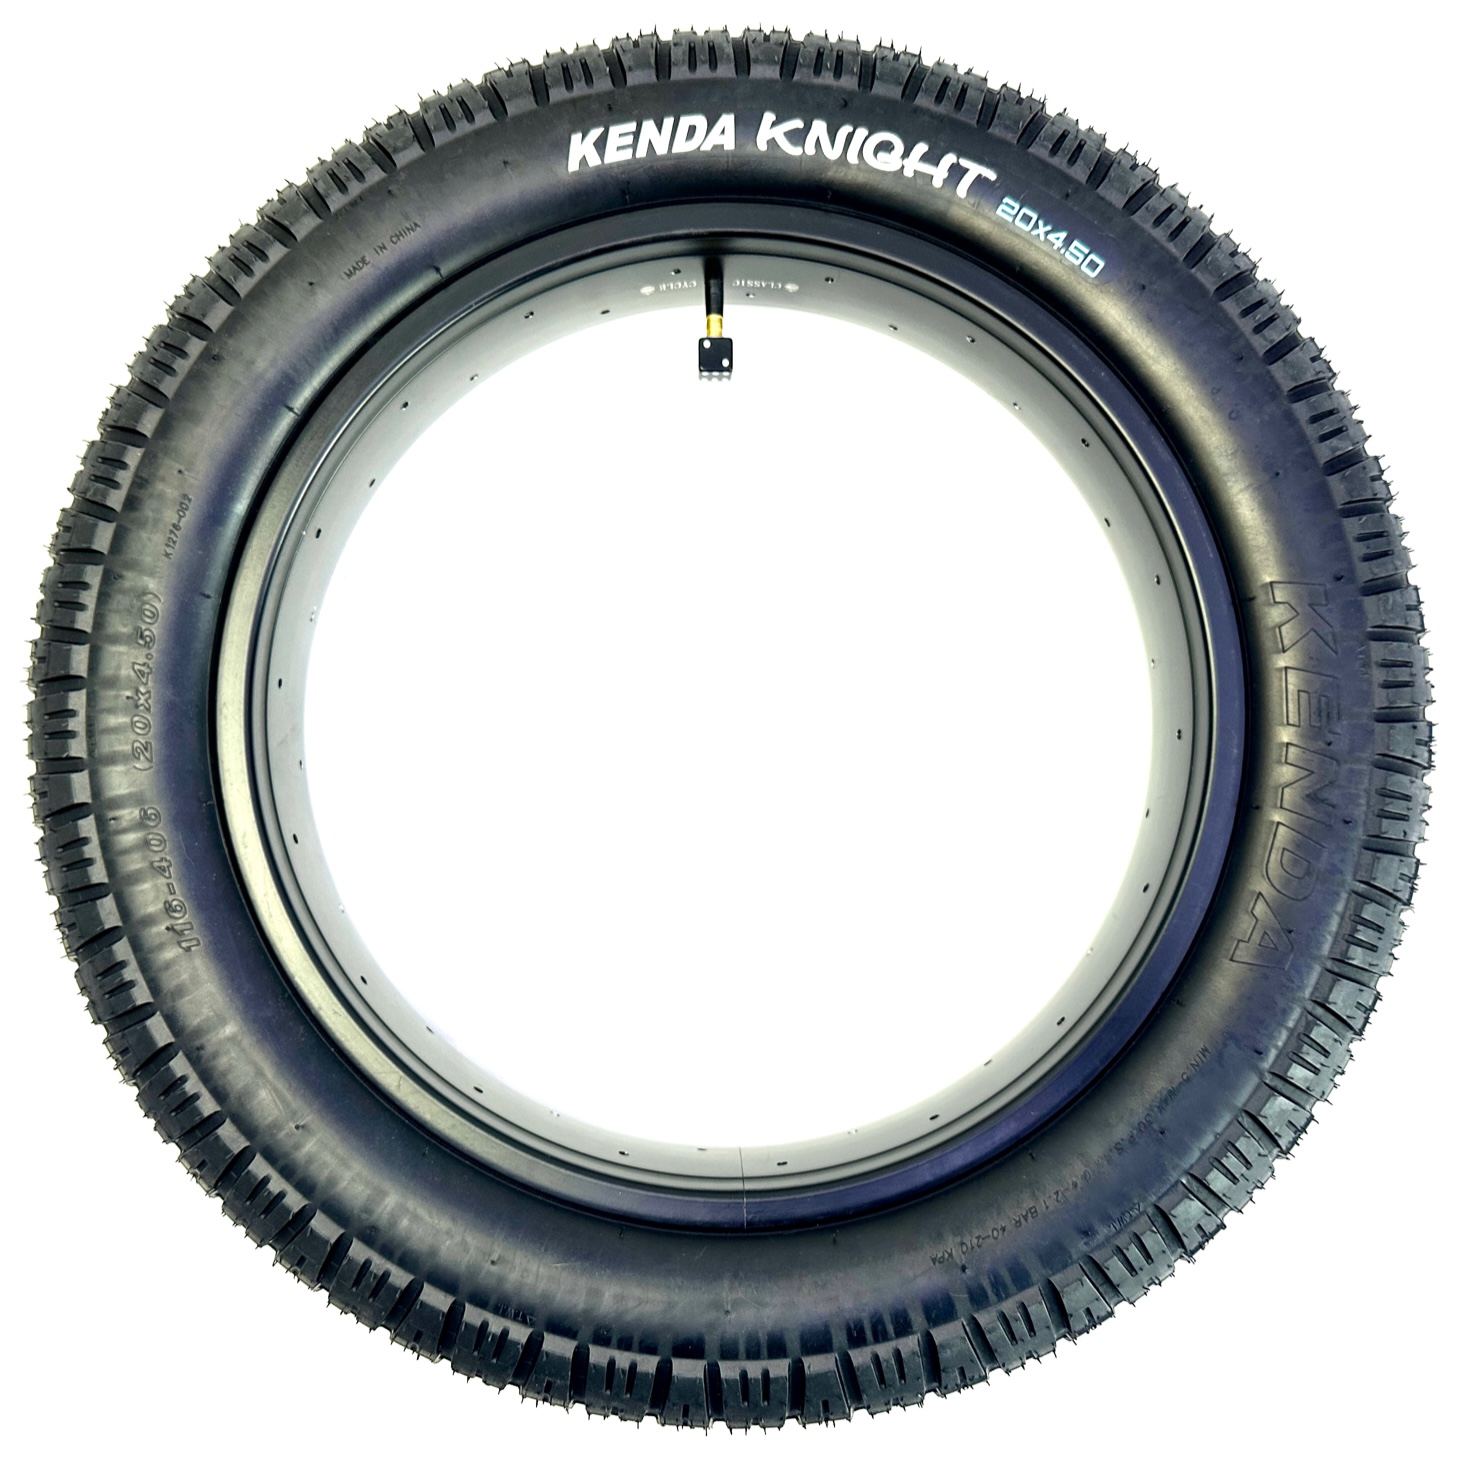 Neumático Kenda Knight 20 x 4.5 negro puro